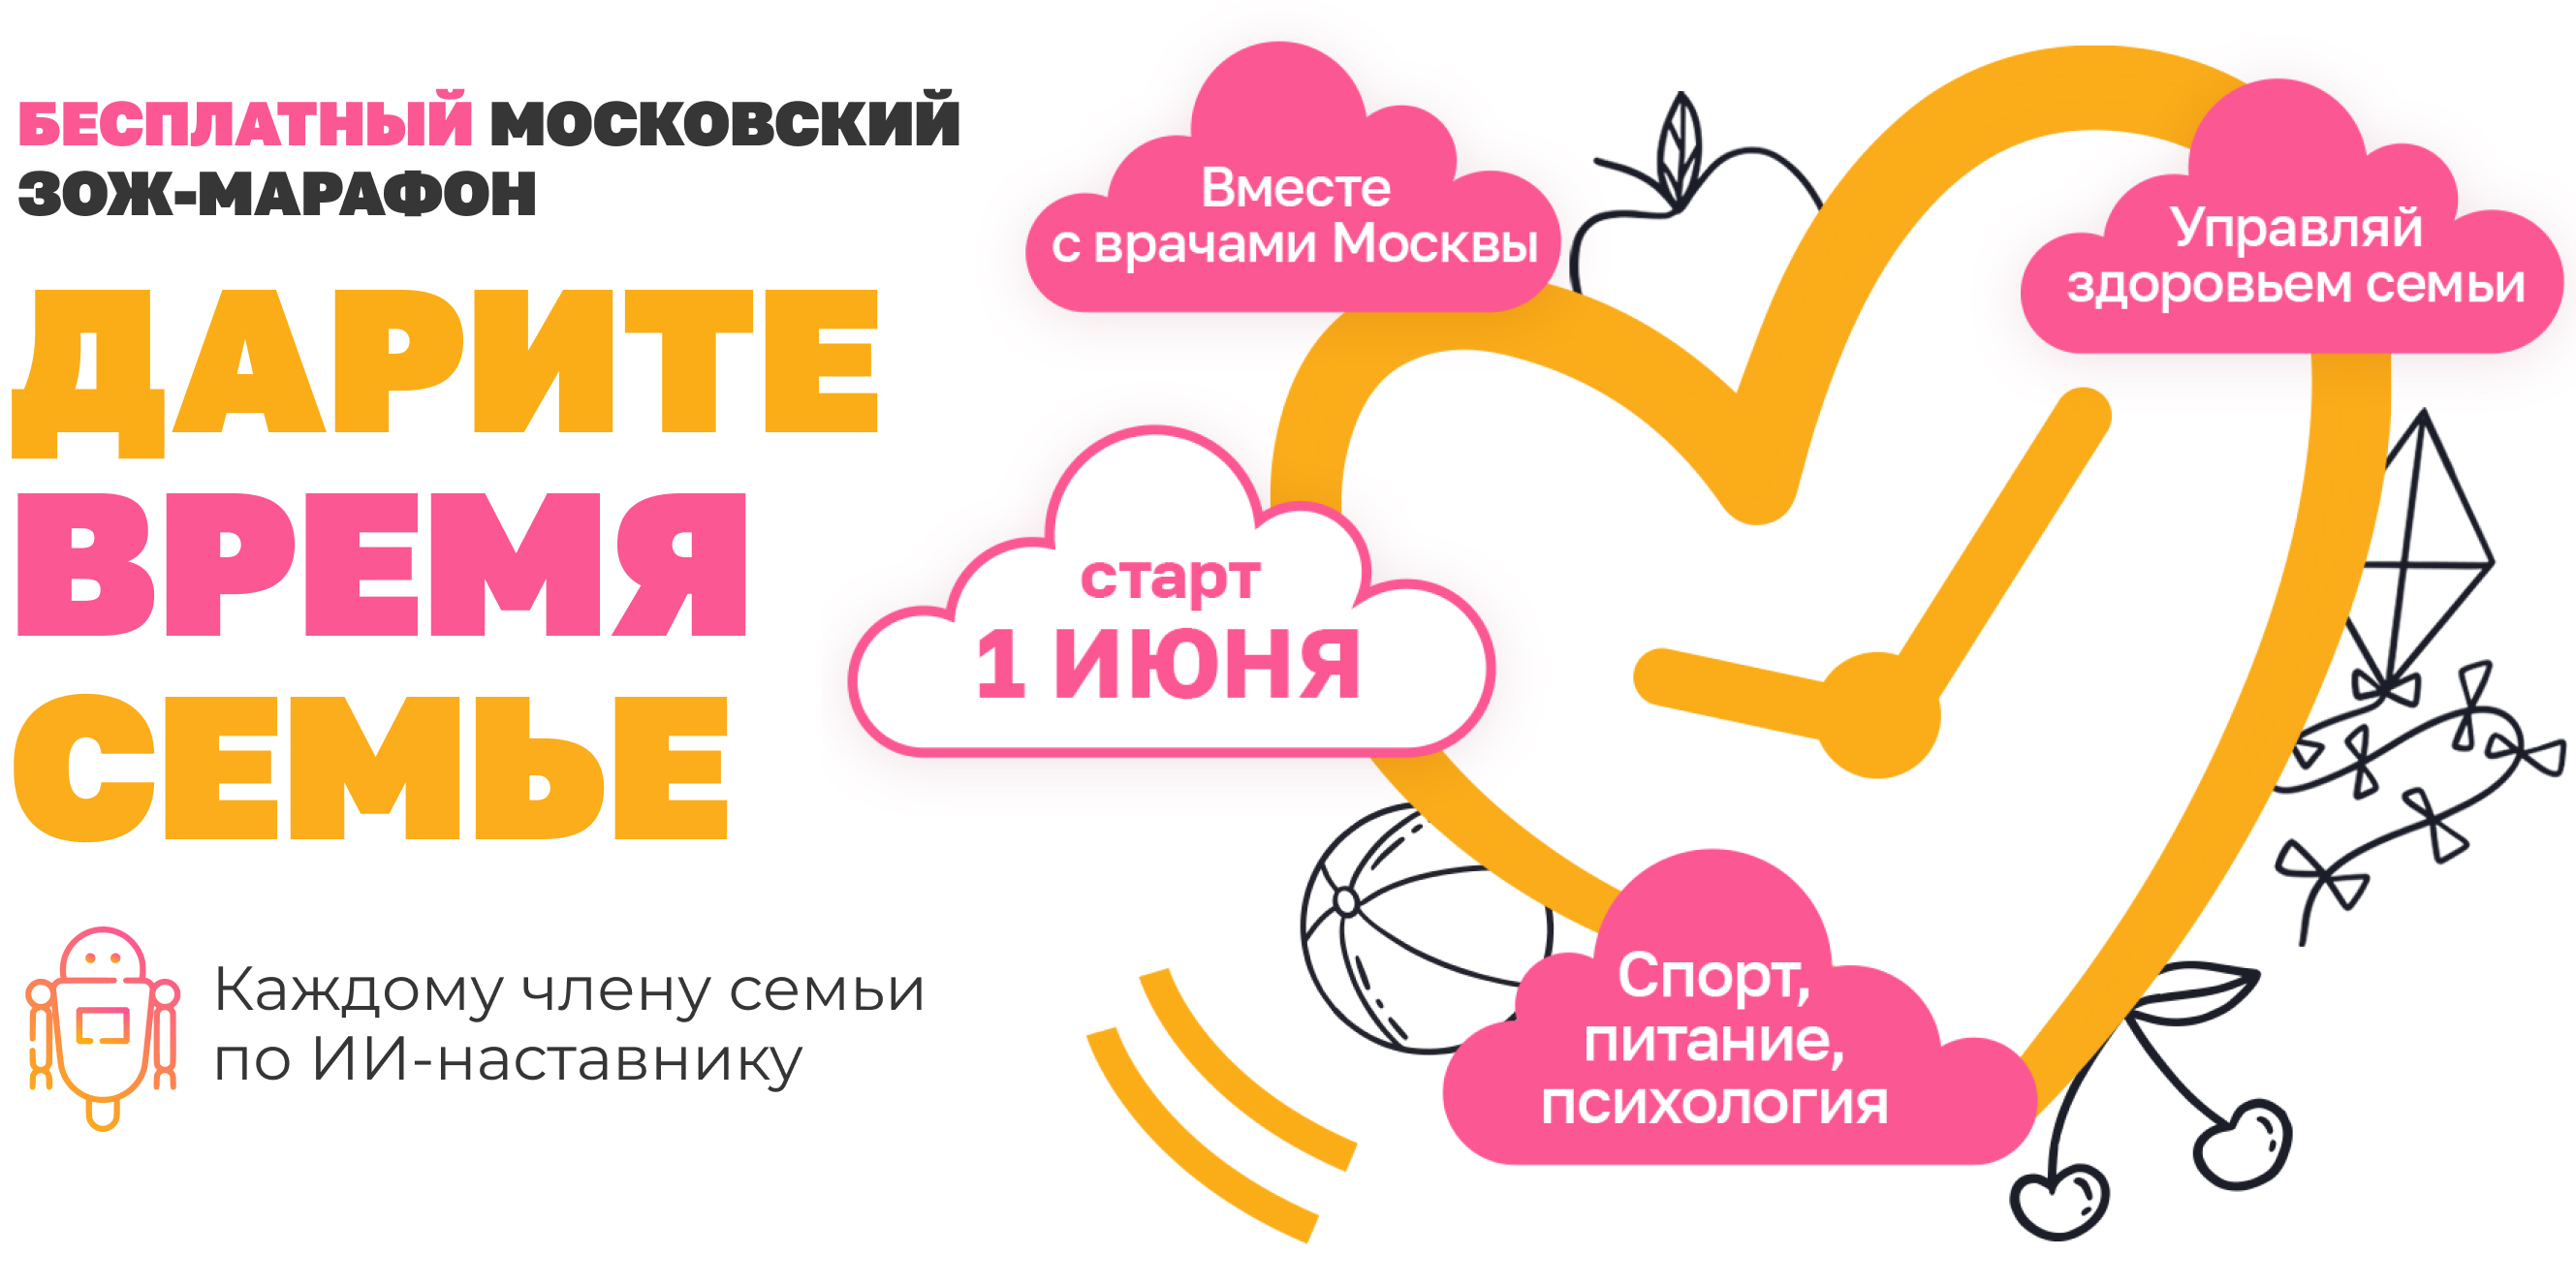 В Москве проходит бесплатный марафон здорового образа жизни для всей семьи